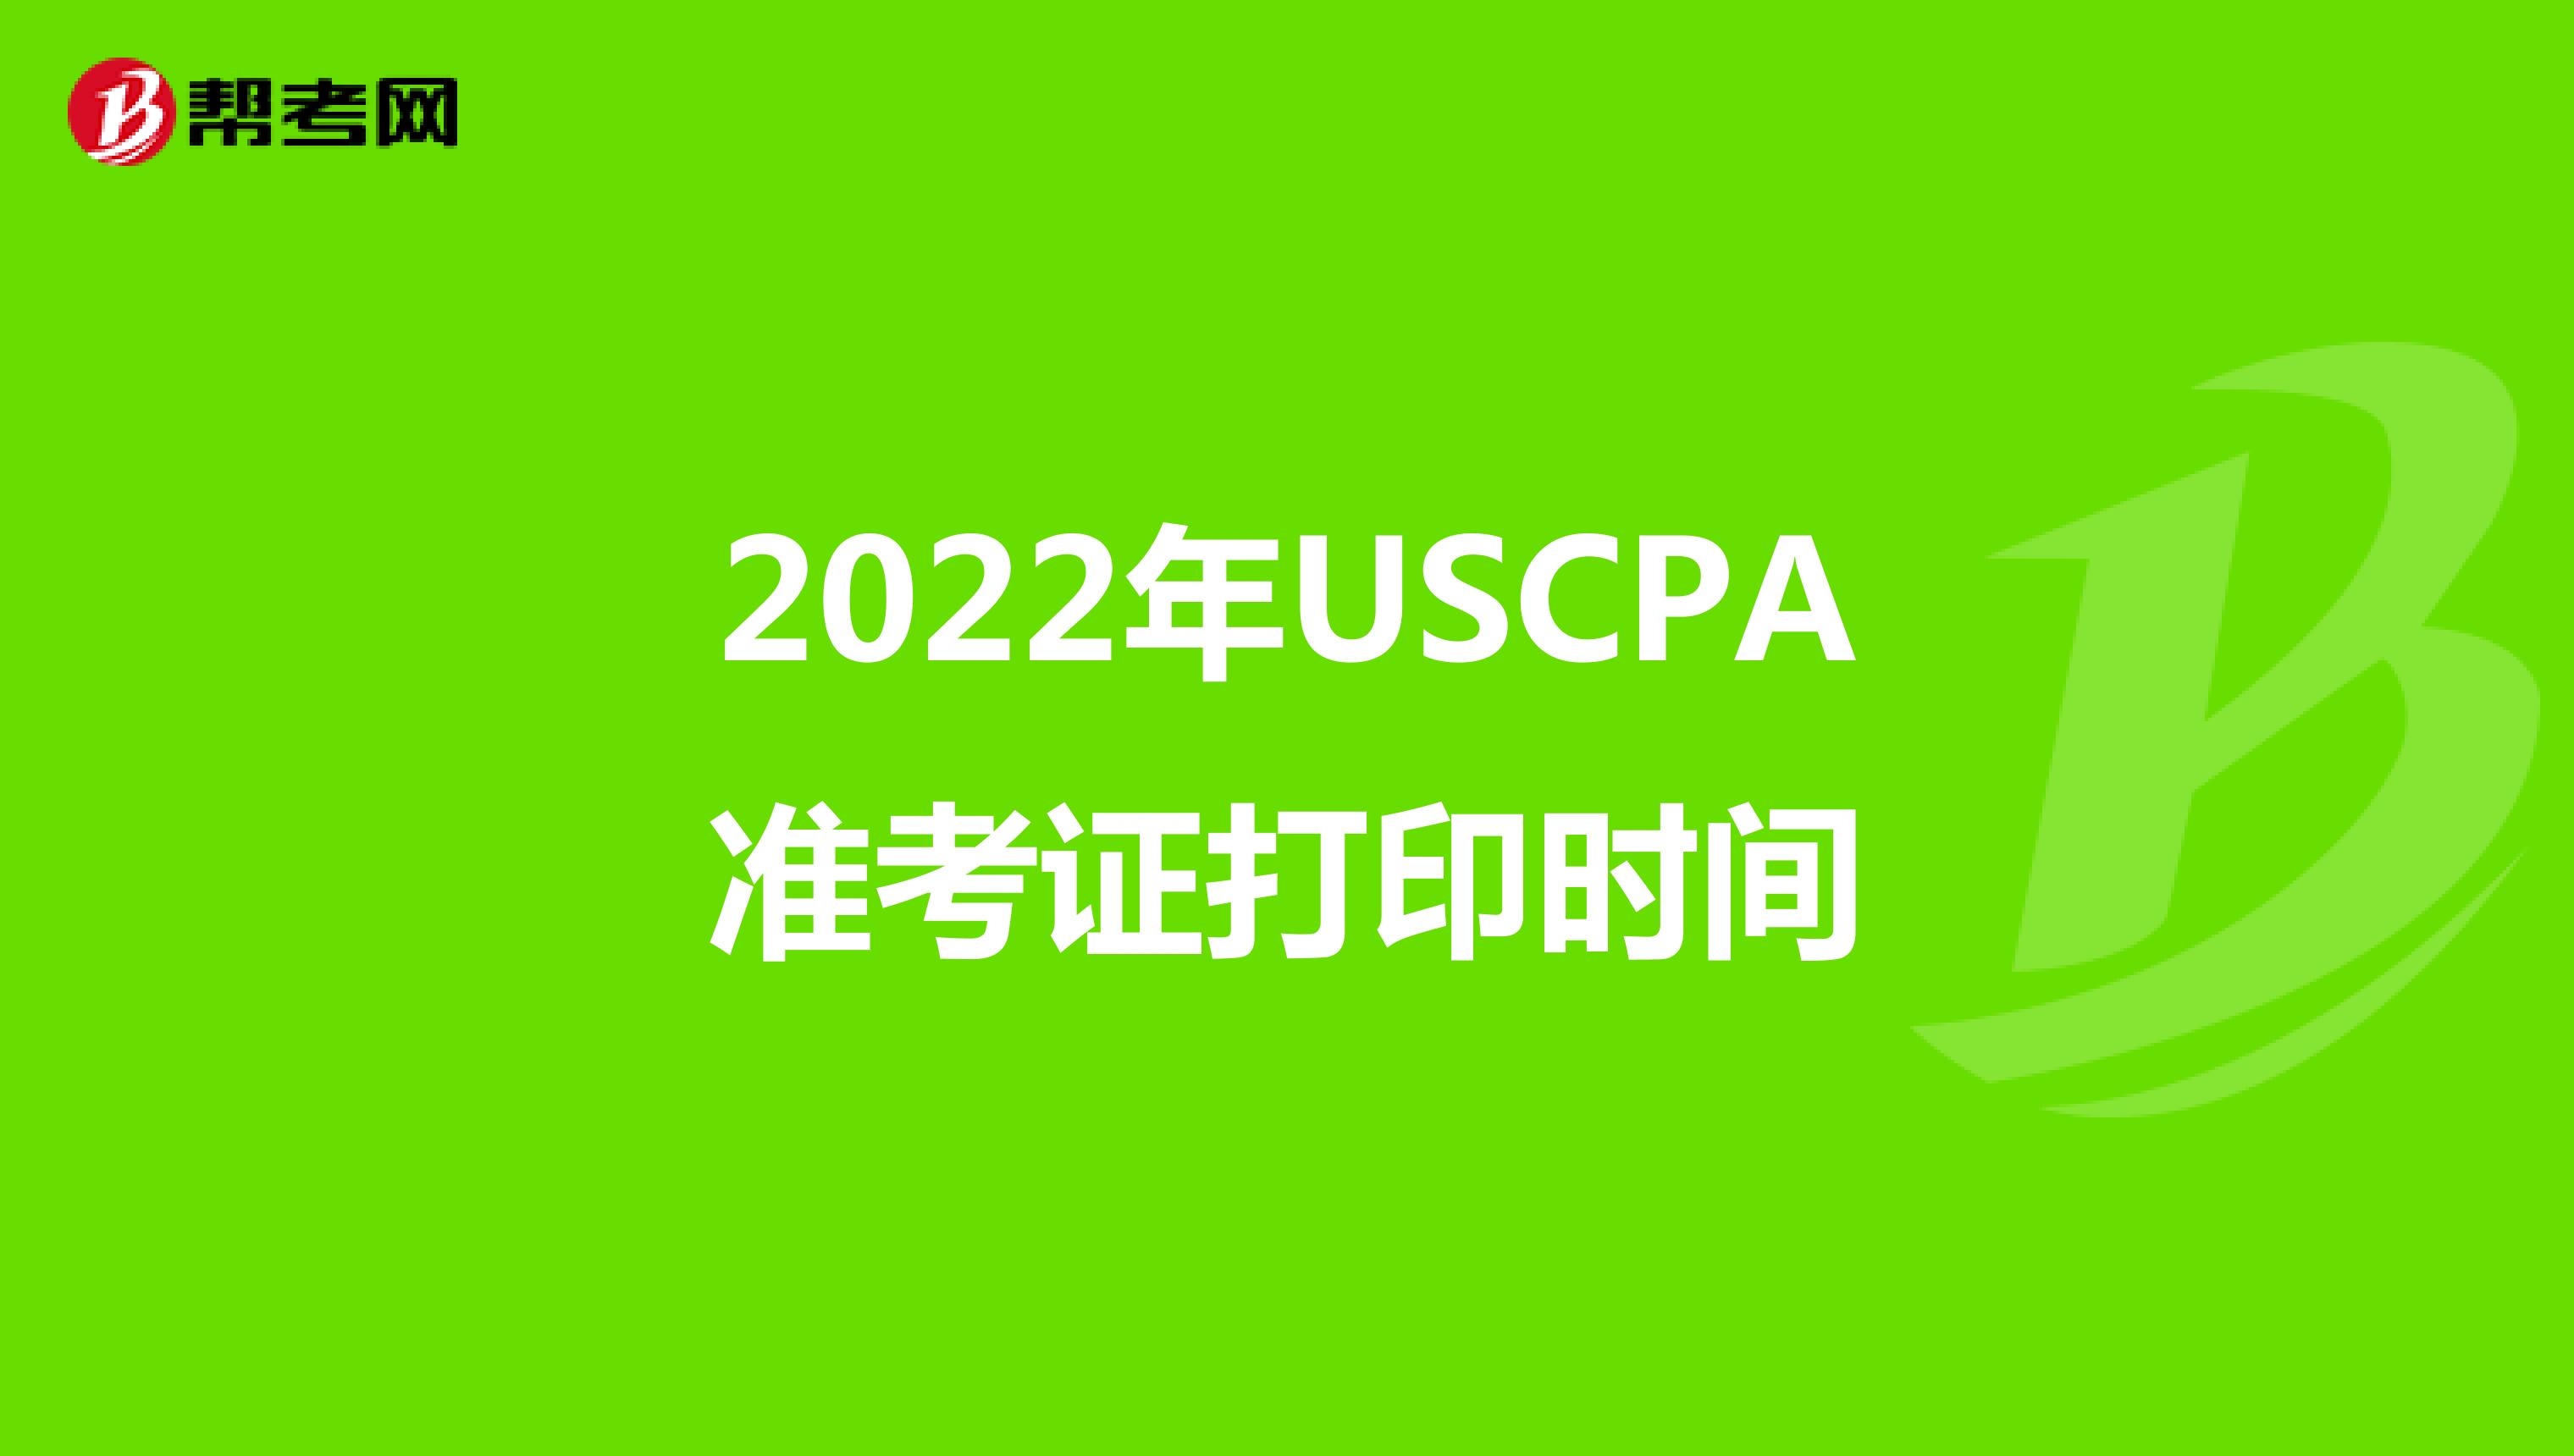 2022年USCPA准考证打印时间